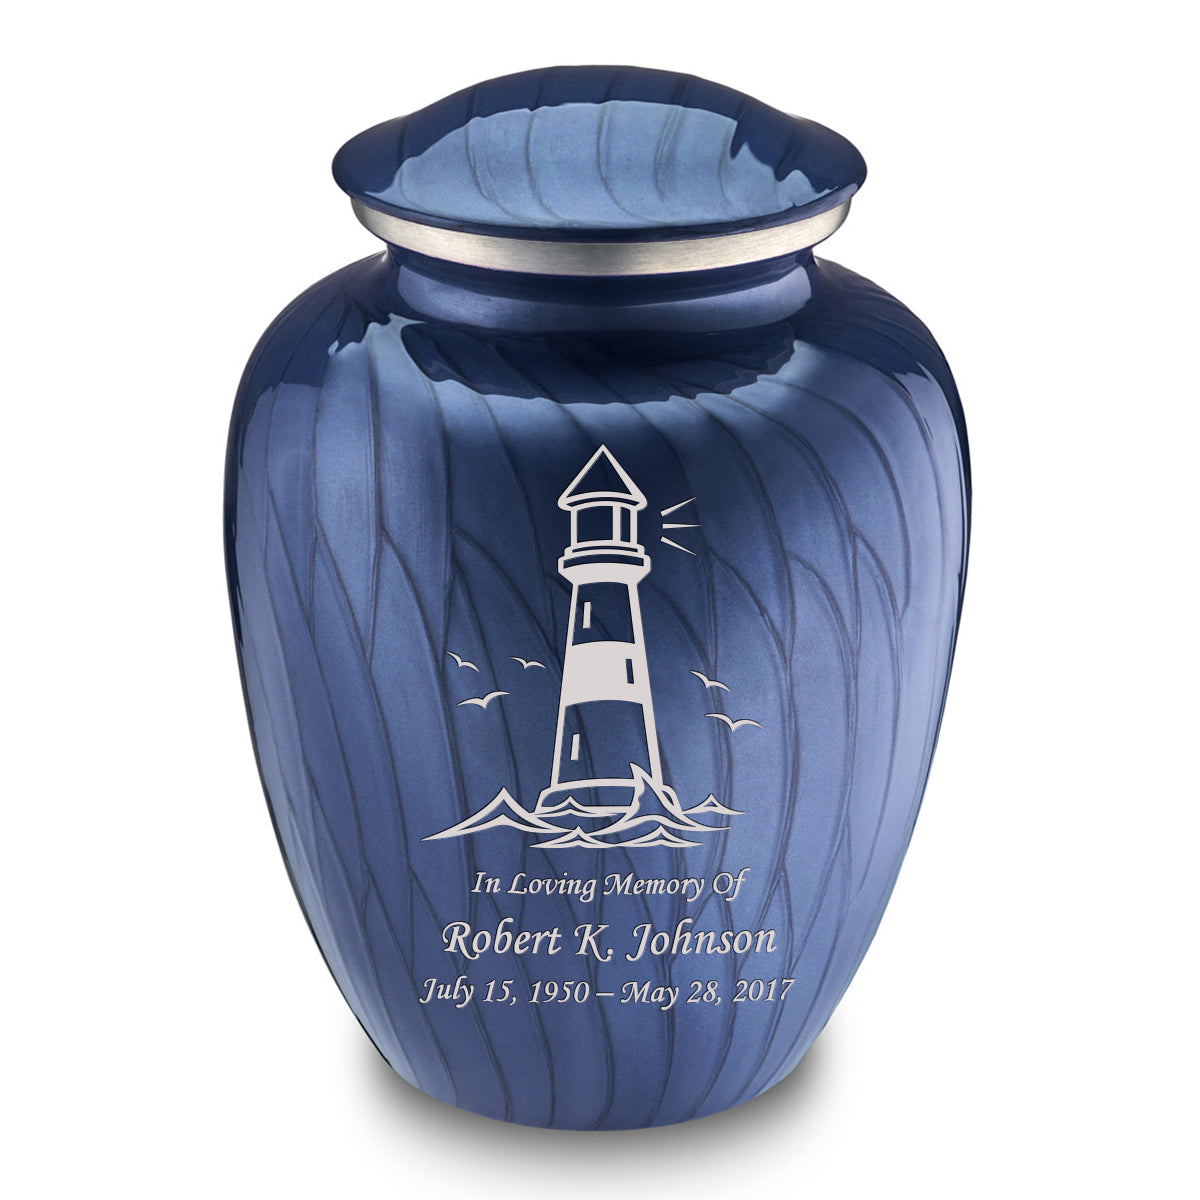 Adult Embrace Pearl Cobalt Blue Lighthouse Cremation Urn